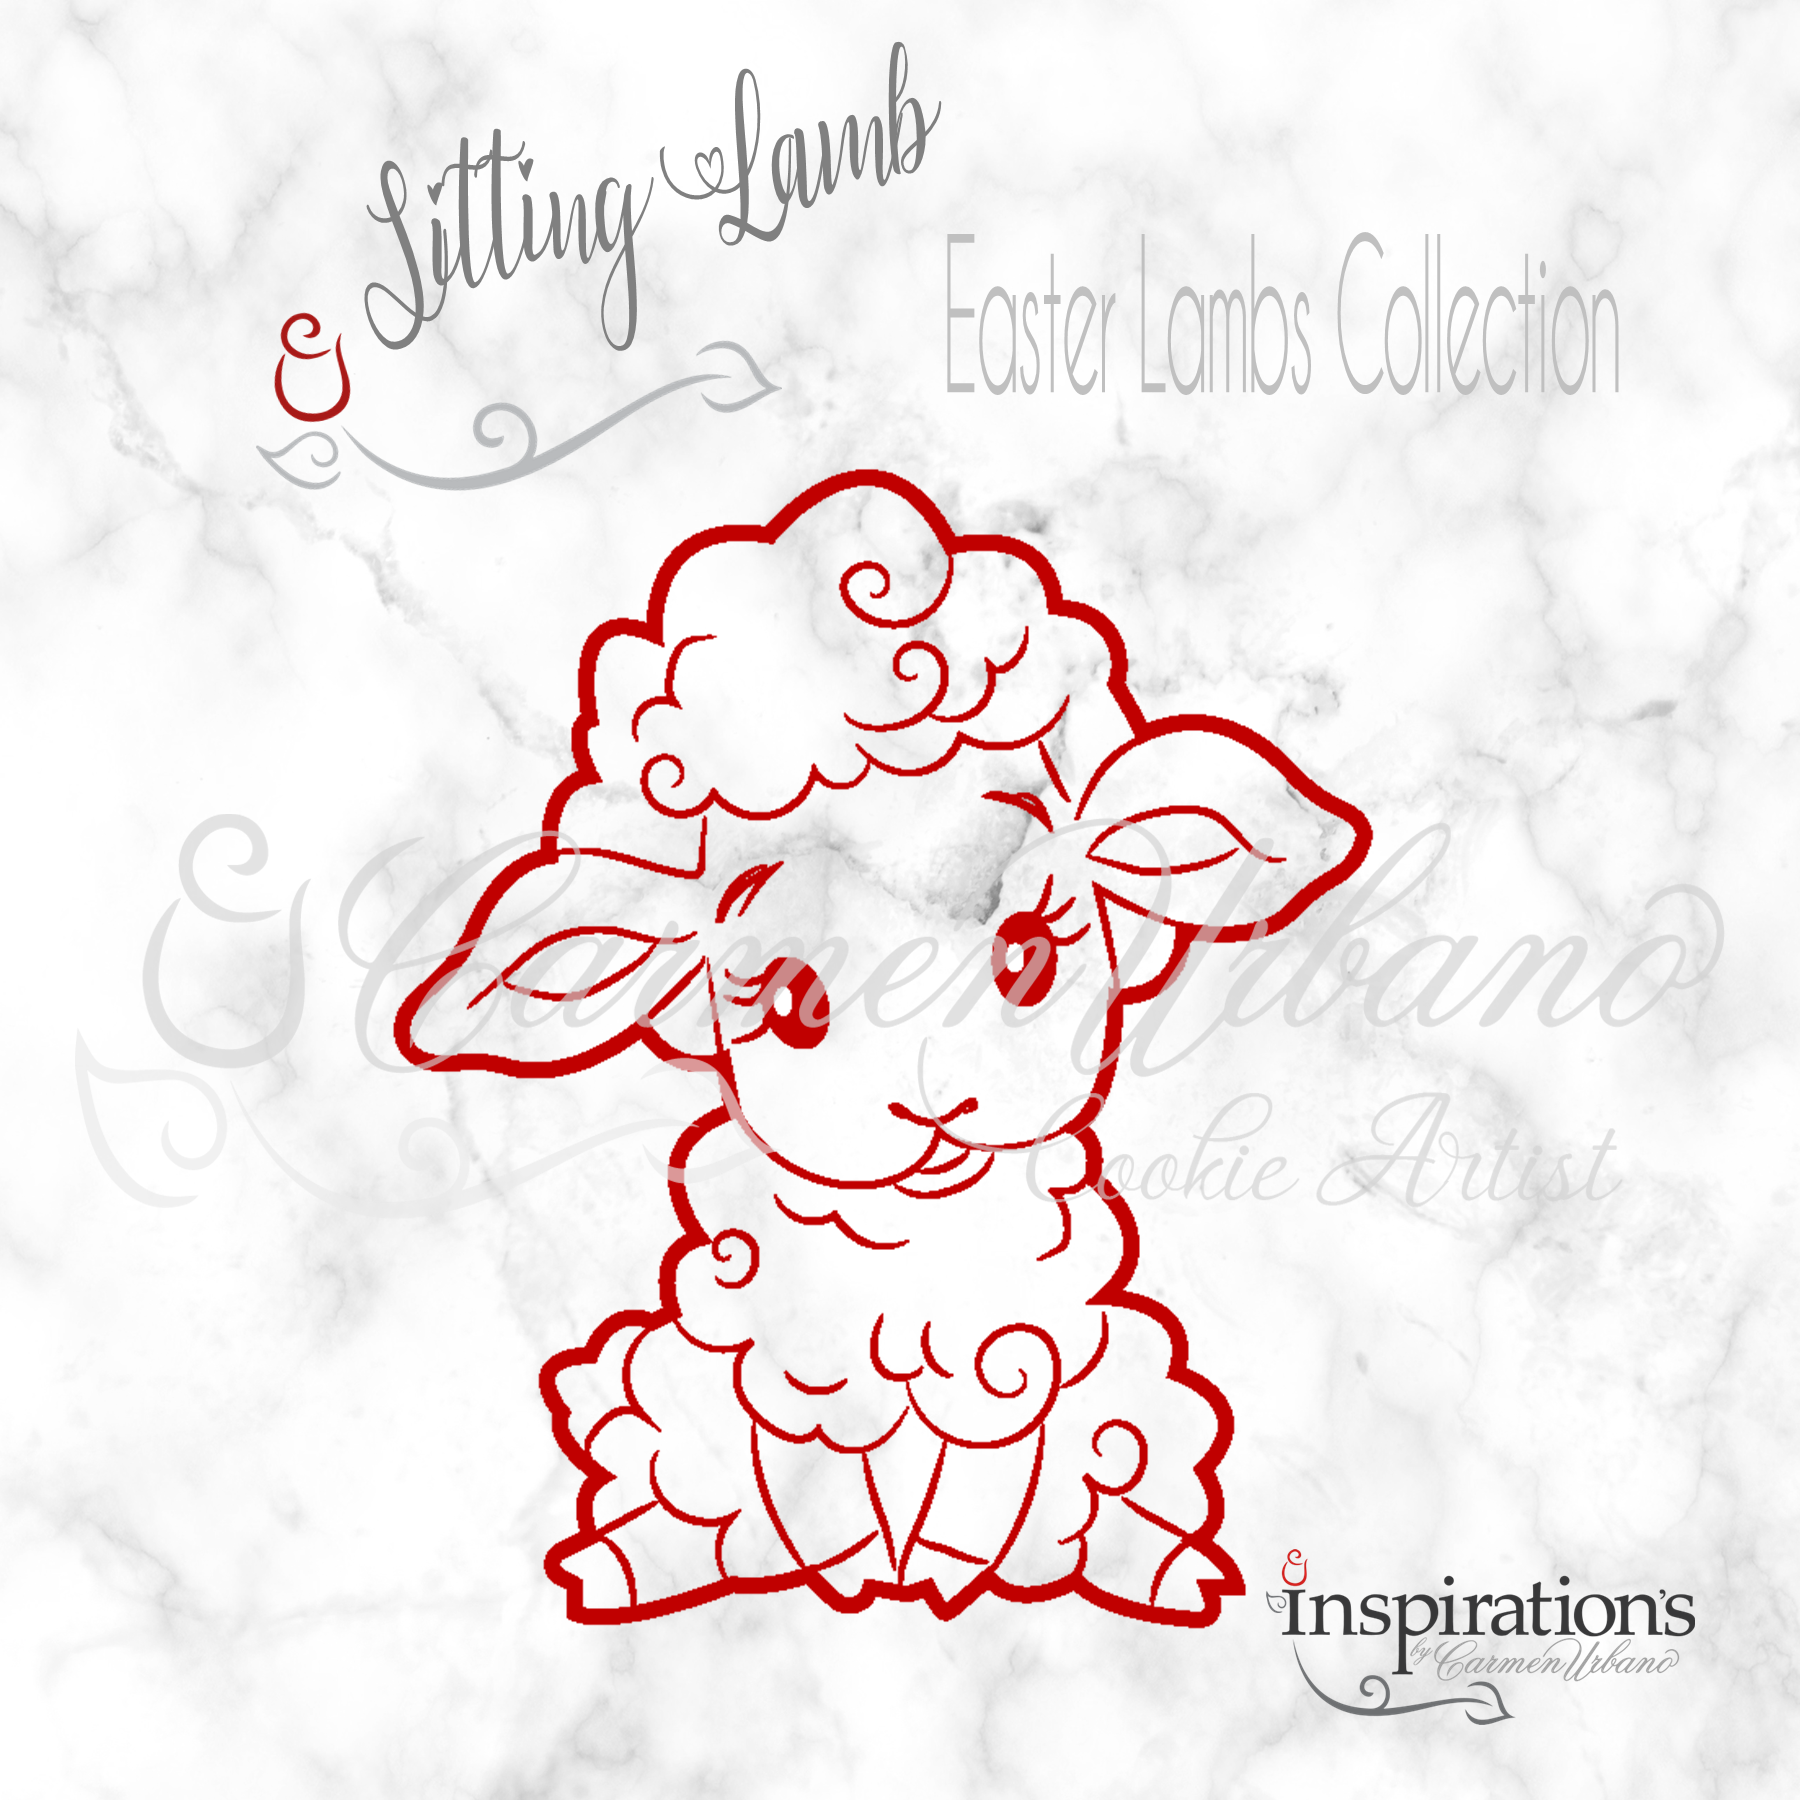 Sitting Lamb – InspirationsByCarmenUrbano